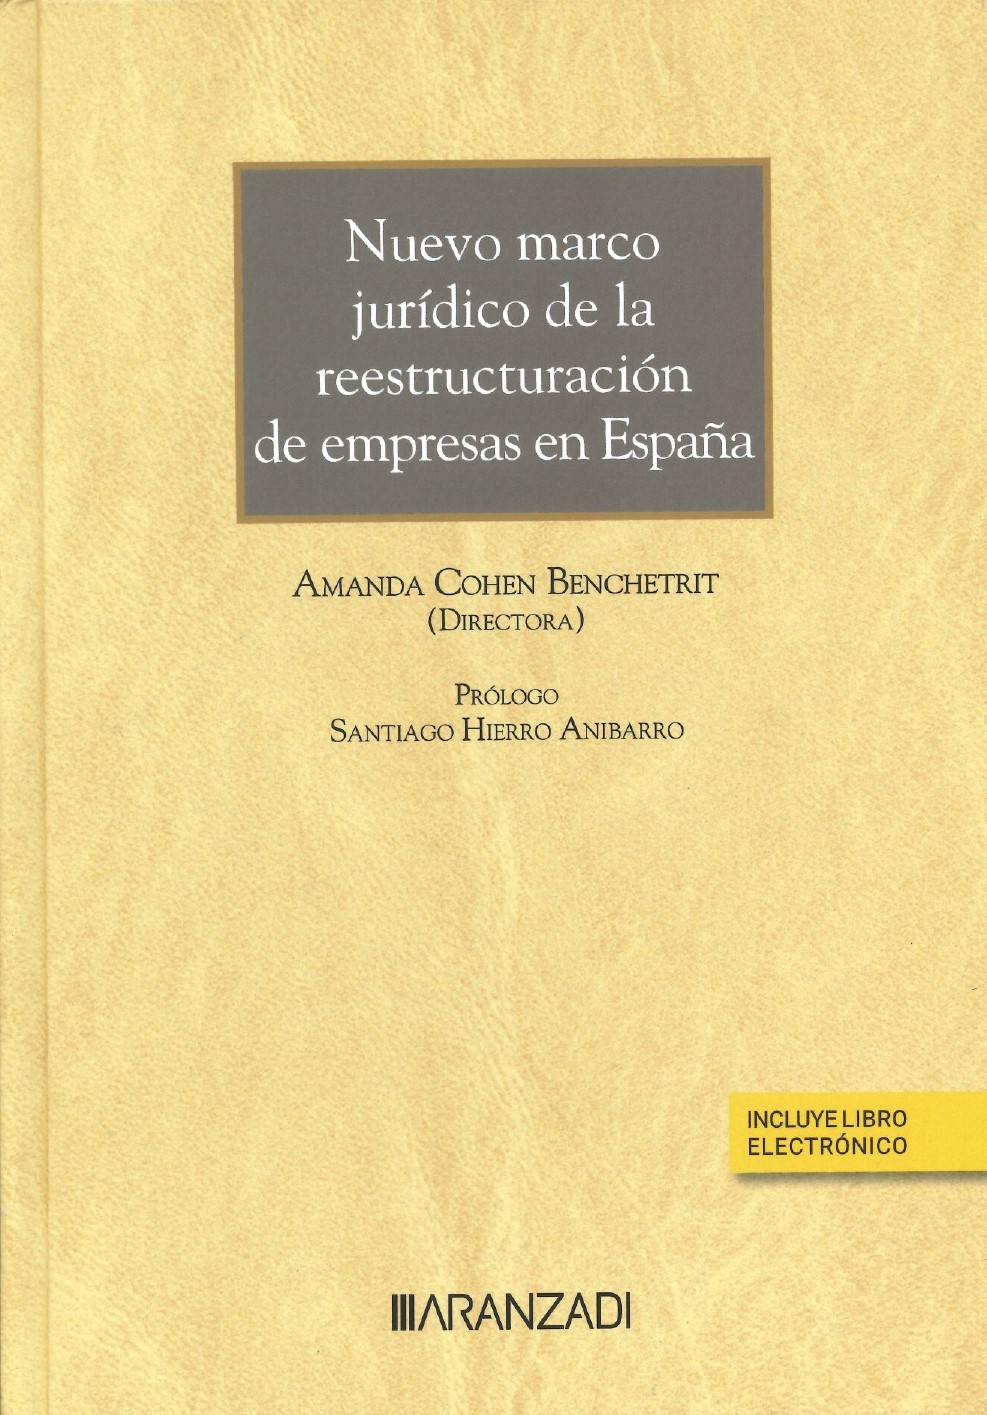 Imagen de portada del libro Nuevo marco jurídico de la reestructuración de empresas en España